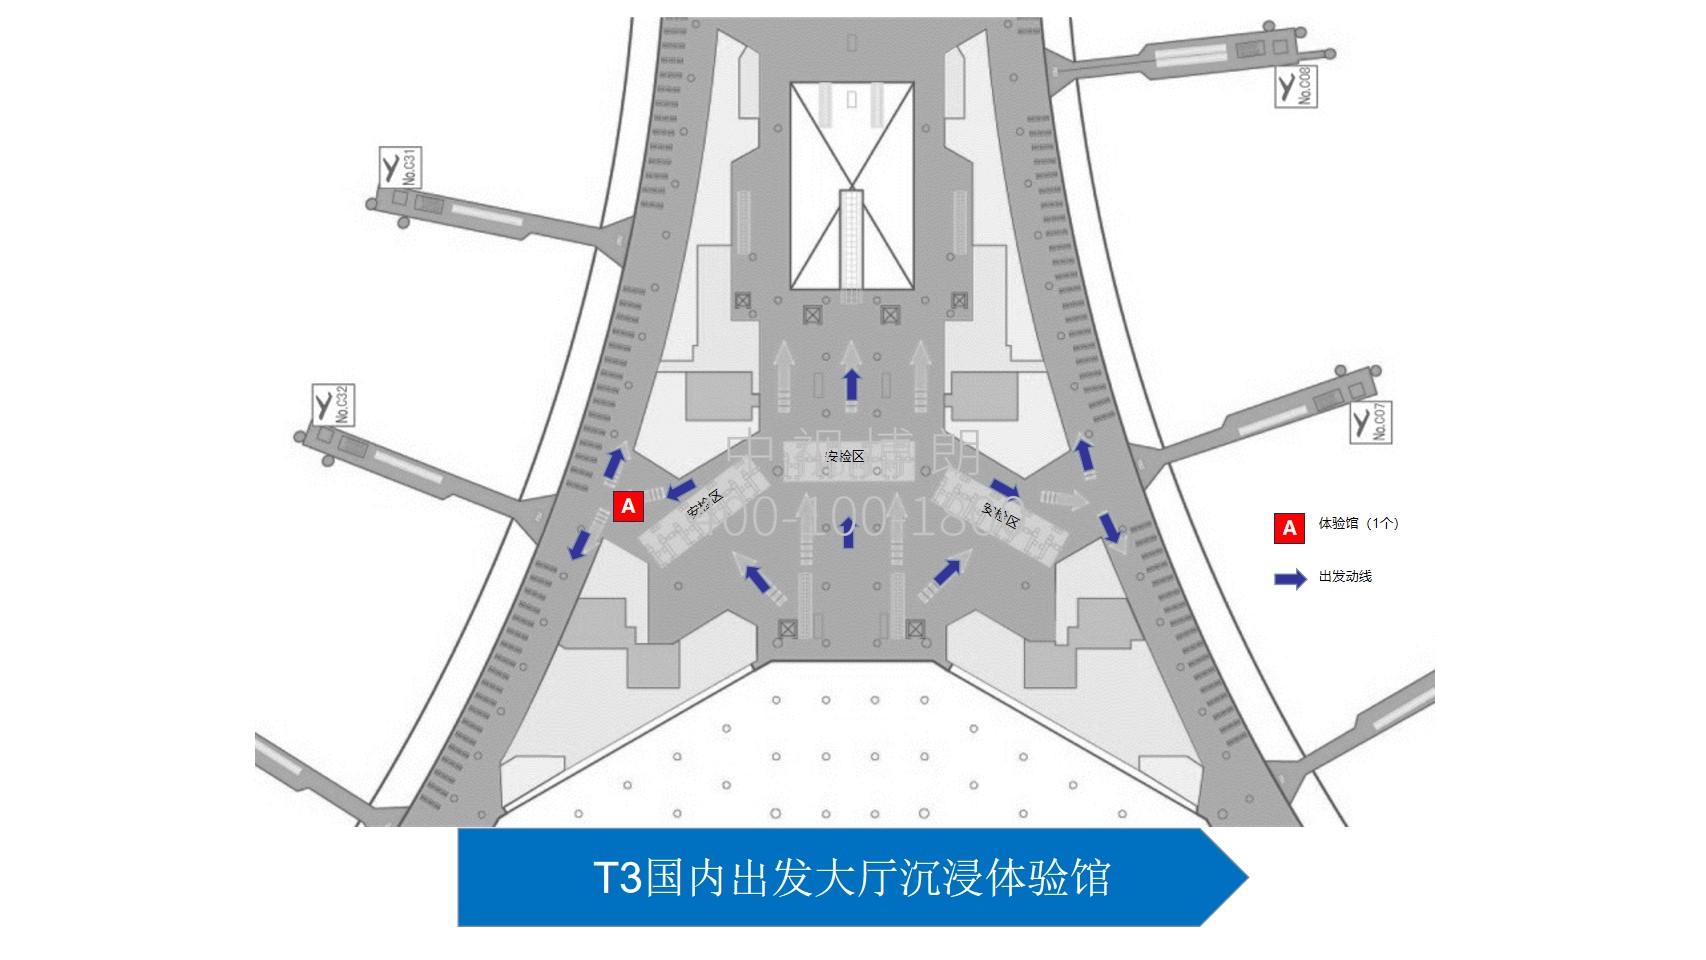 北京首都机场广告-T3 Domestic Departure Hall Immersion Experience Hall位置图